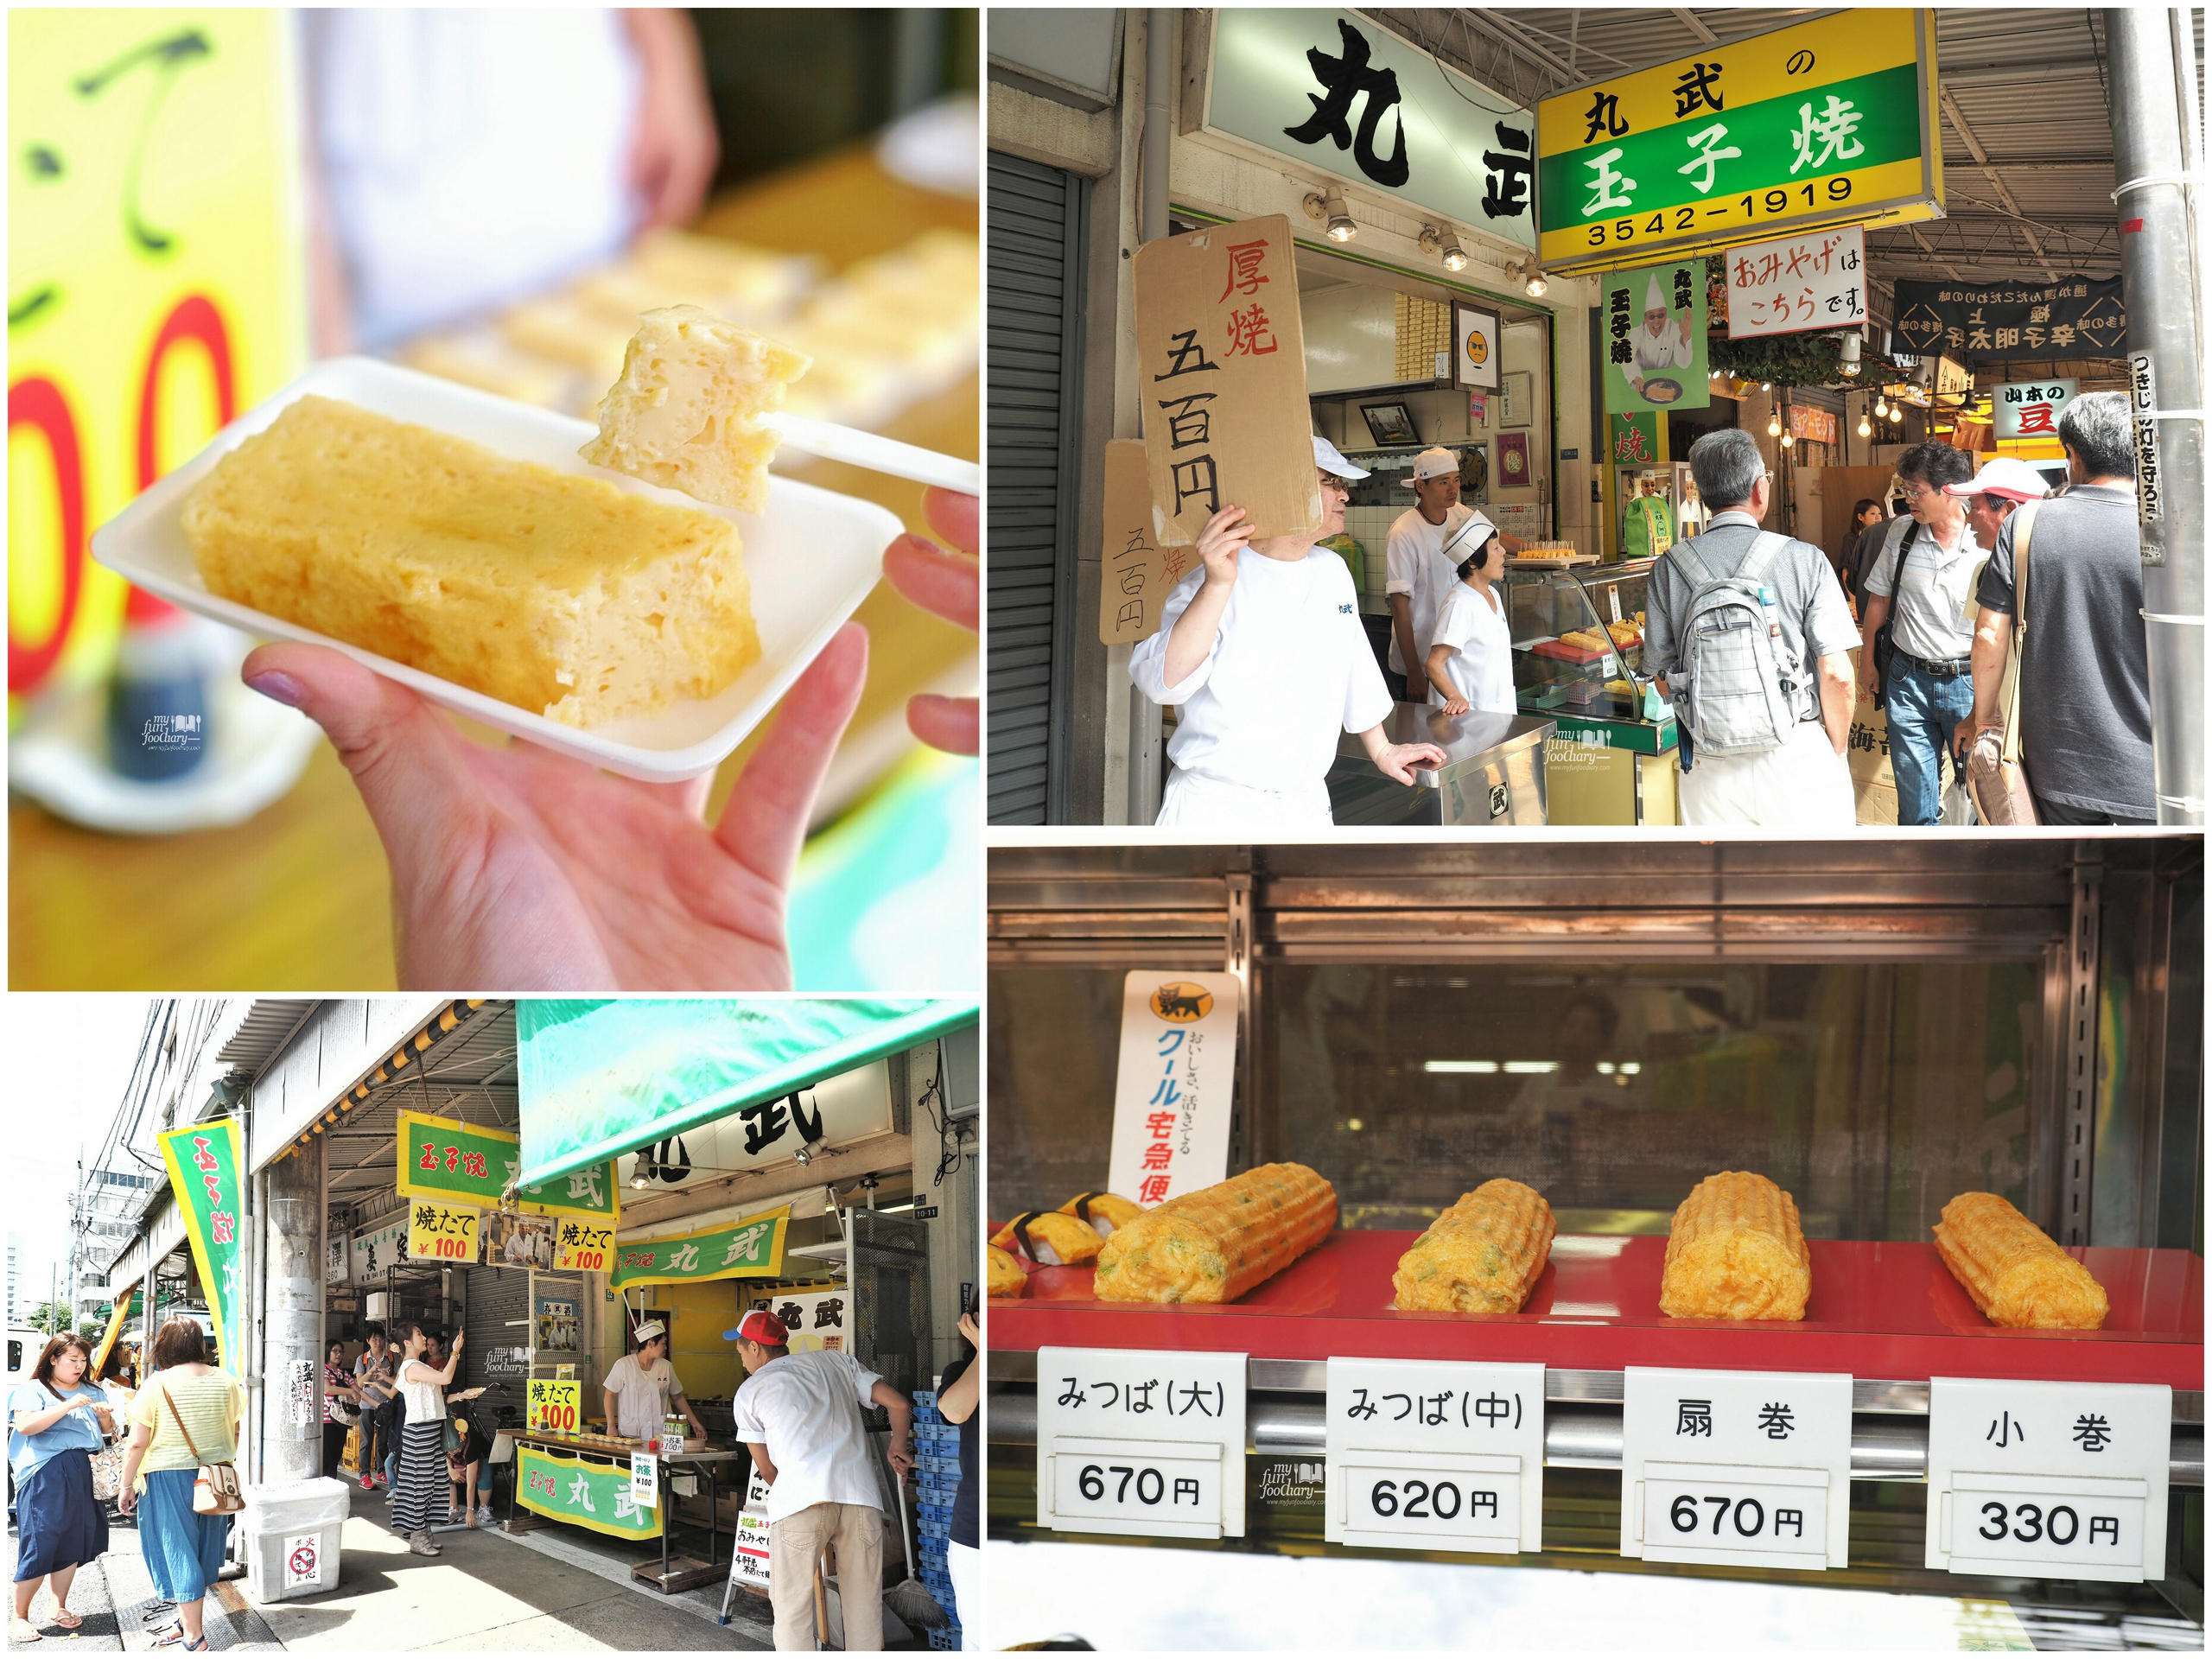 Daisada Egg Tamago at Tsukiji Market by Myfunfoodiary